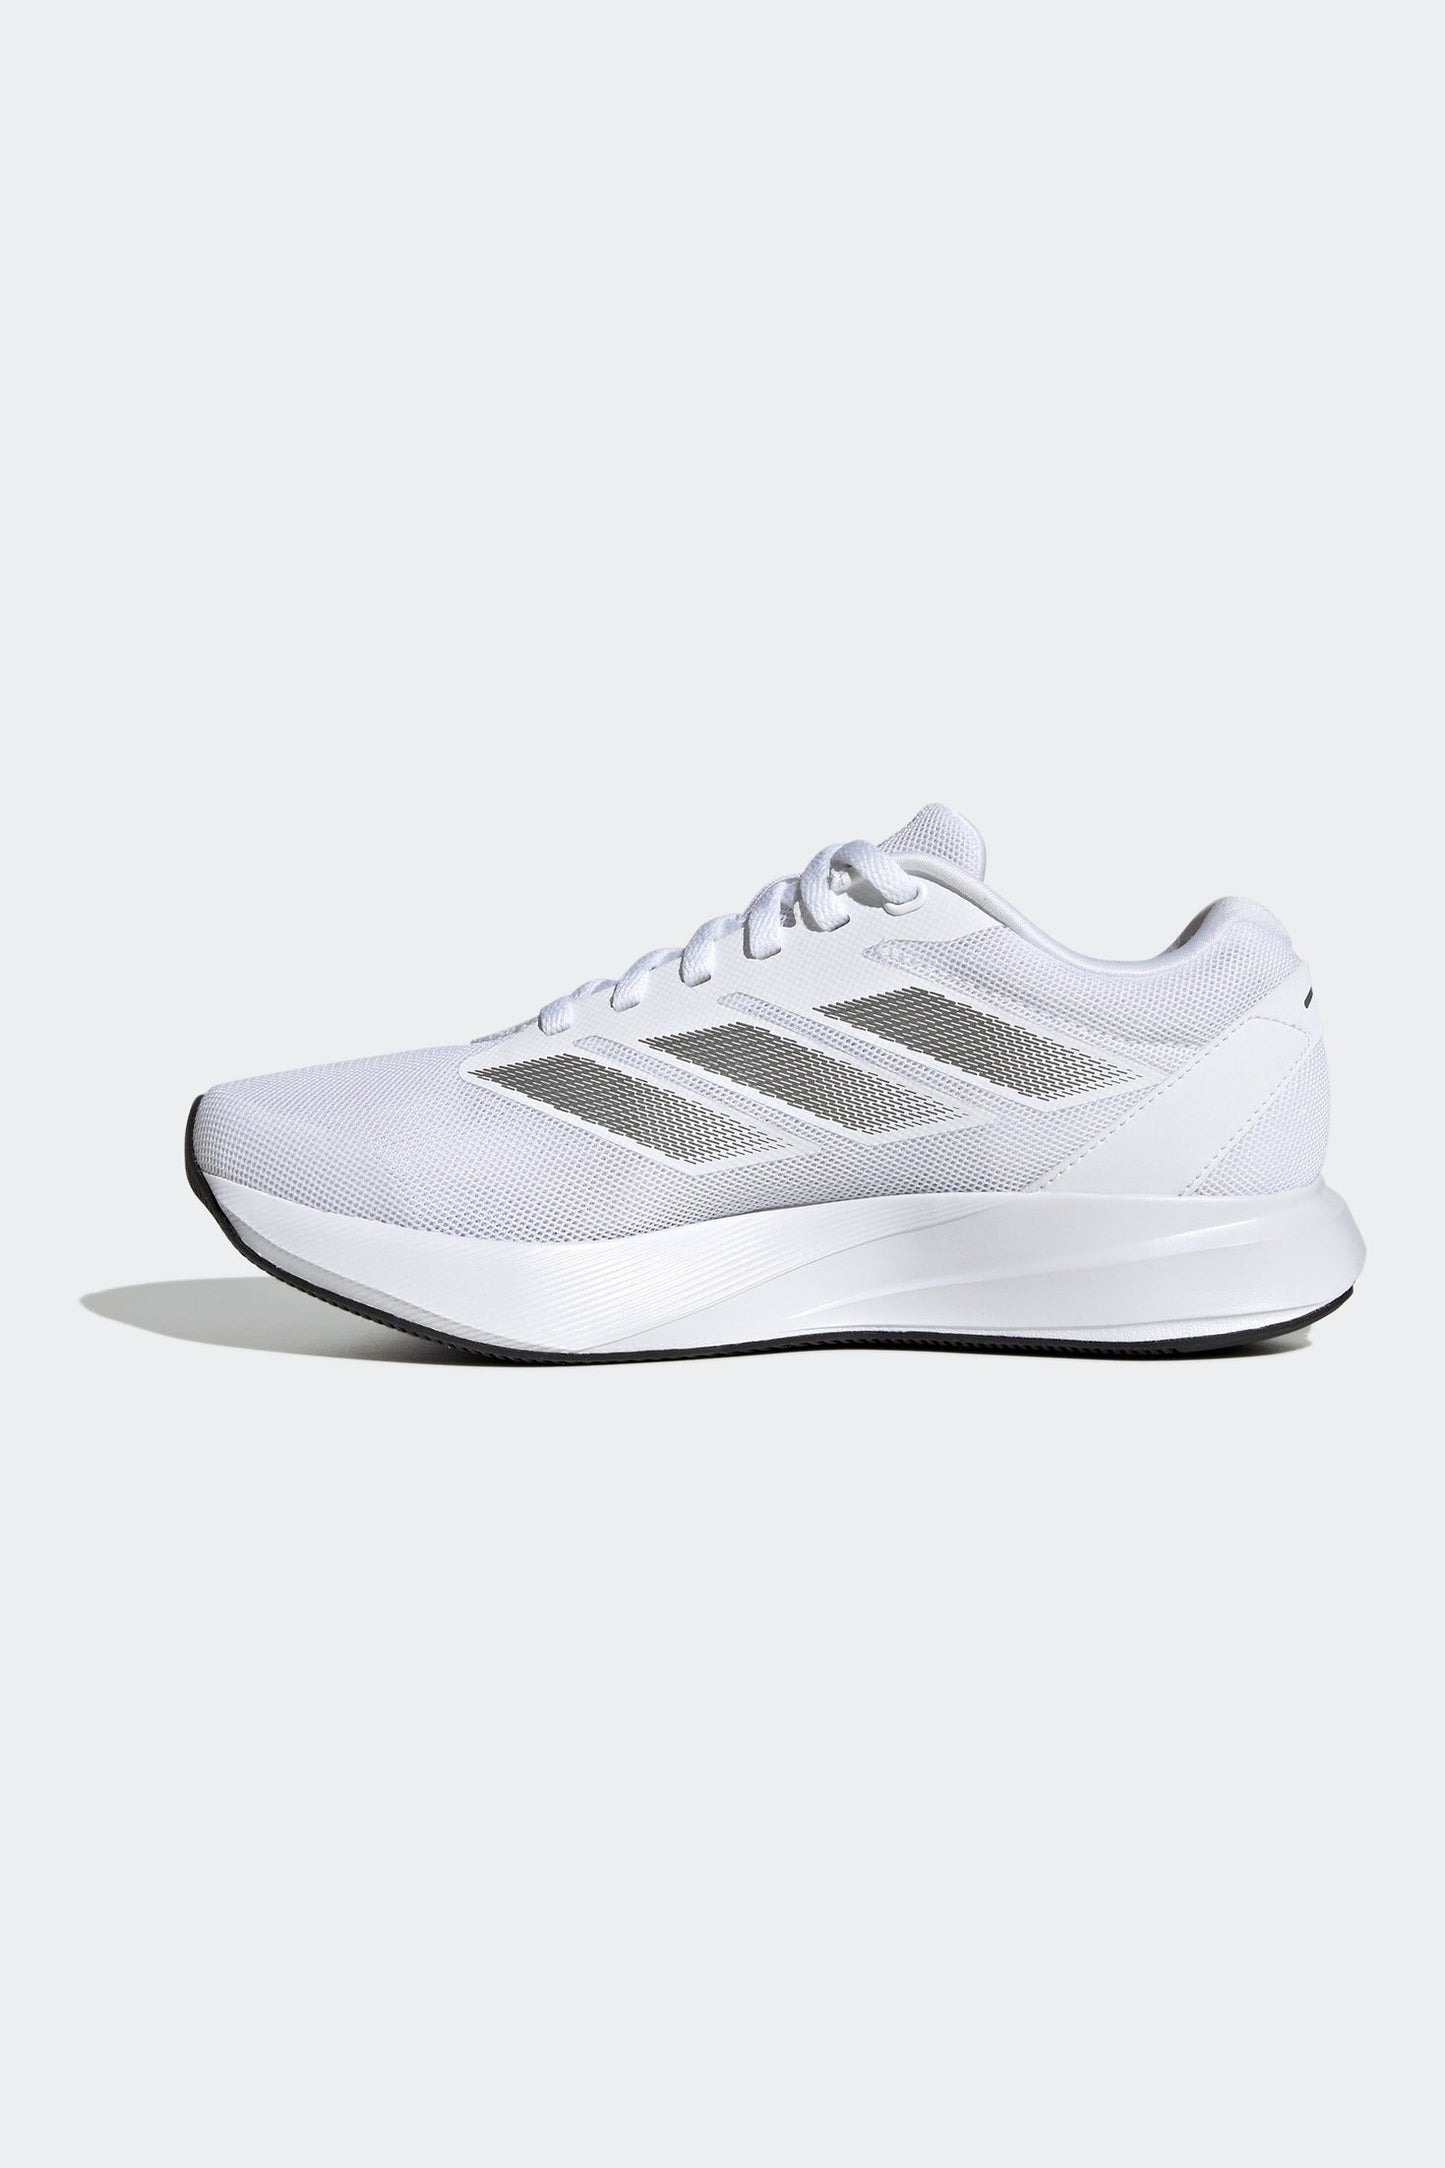 נעלי ספורט לנשים DURAMO RC בצבע לבן ואפור